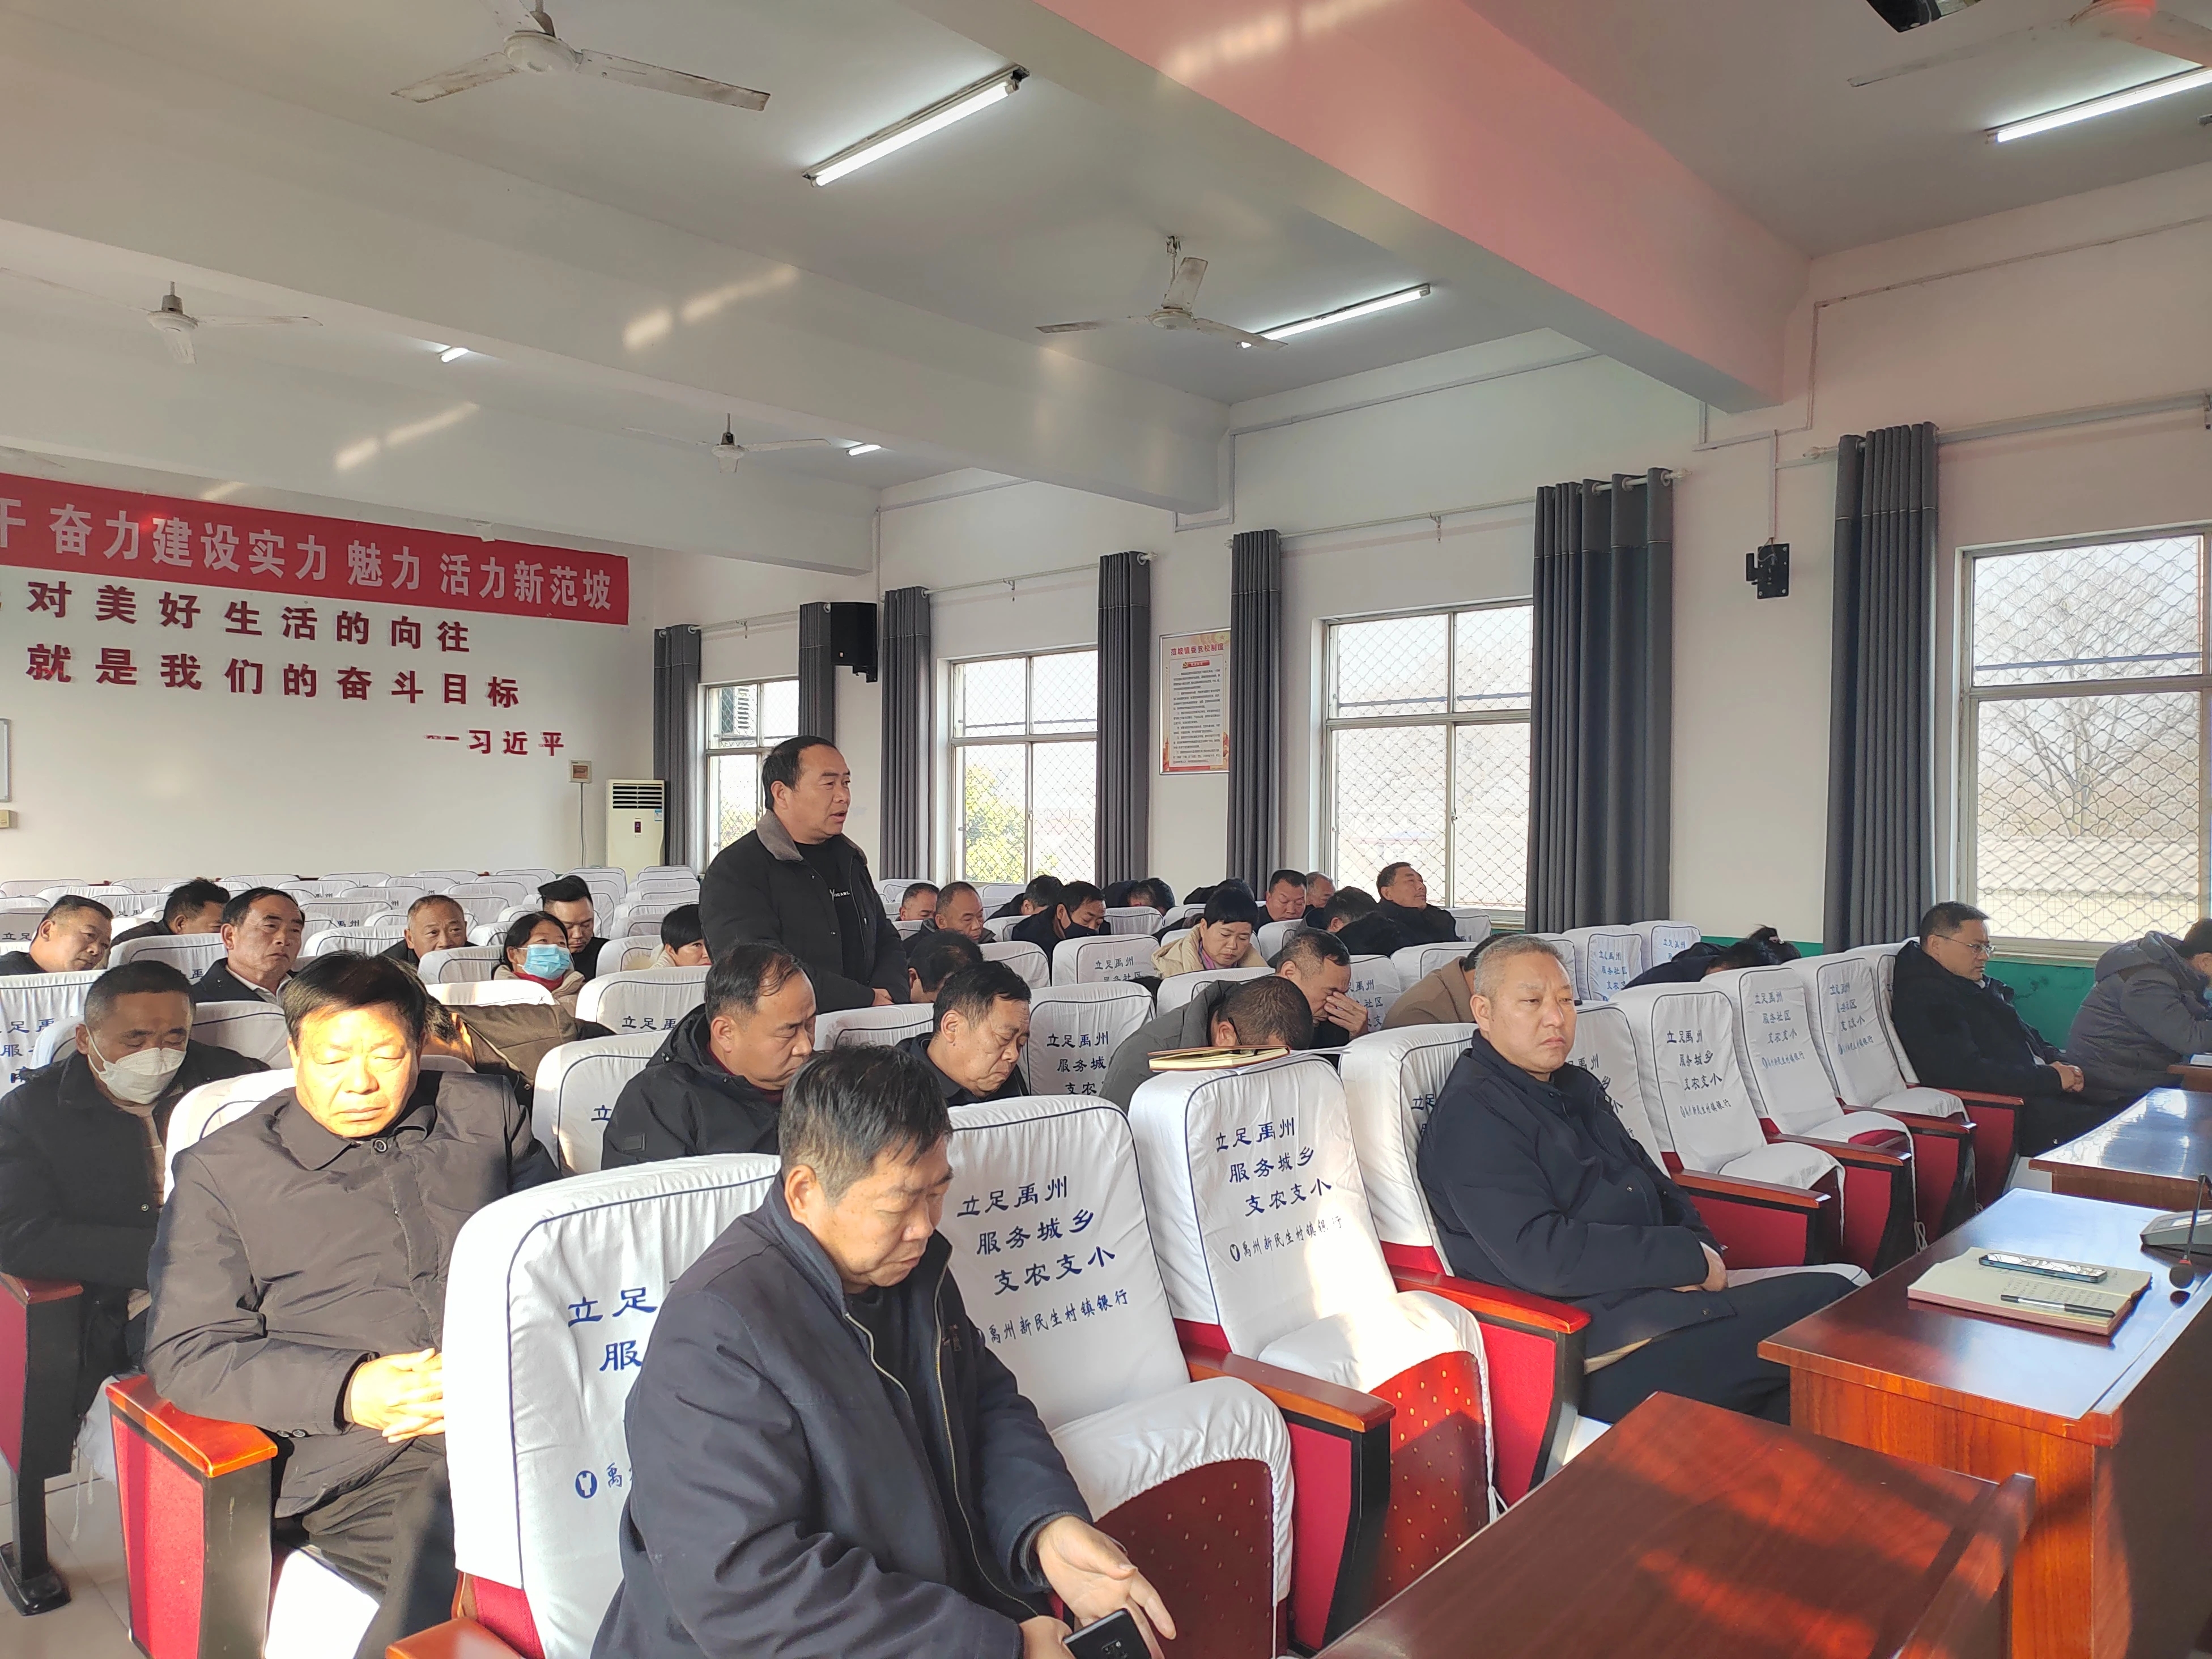 共谋发展——范坡镇召开村集体经济发展座谈会